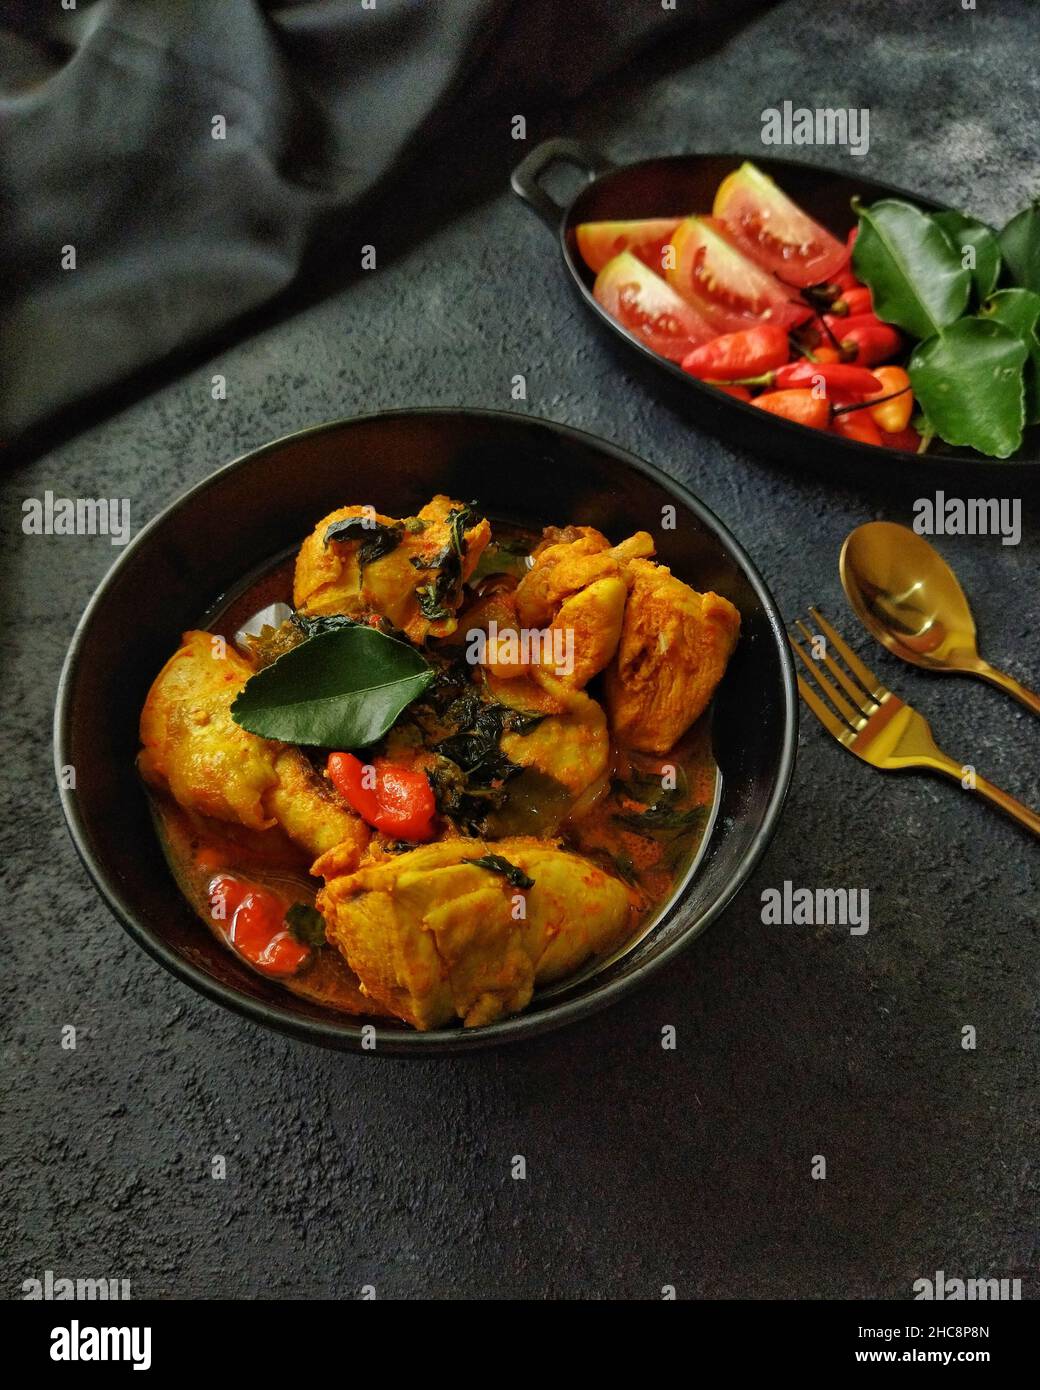 Ayam Woku oder Chicken Woku, ein traditionelles Gericht aus Manado, Nord-Sulawesi, Indonesien. Es wird aus Huhn mit verschiedenen Gewürzen gekocht. Stockfoto